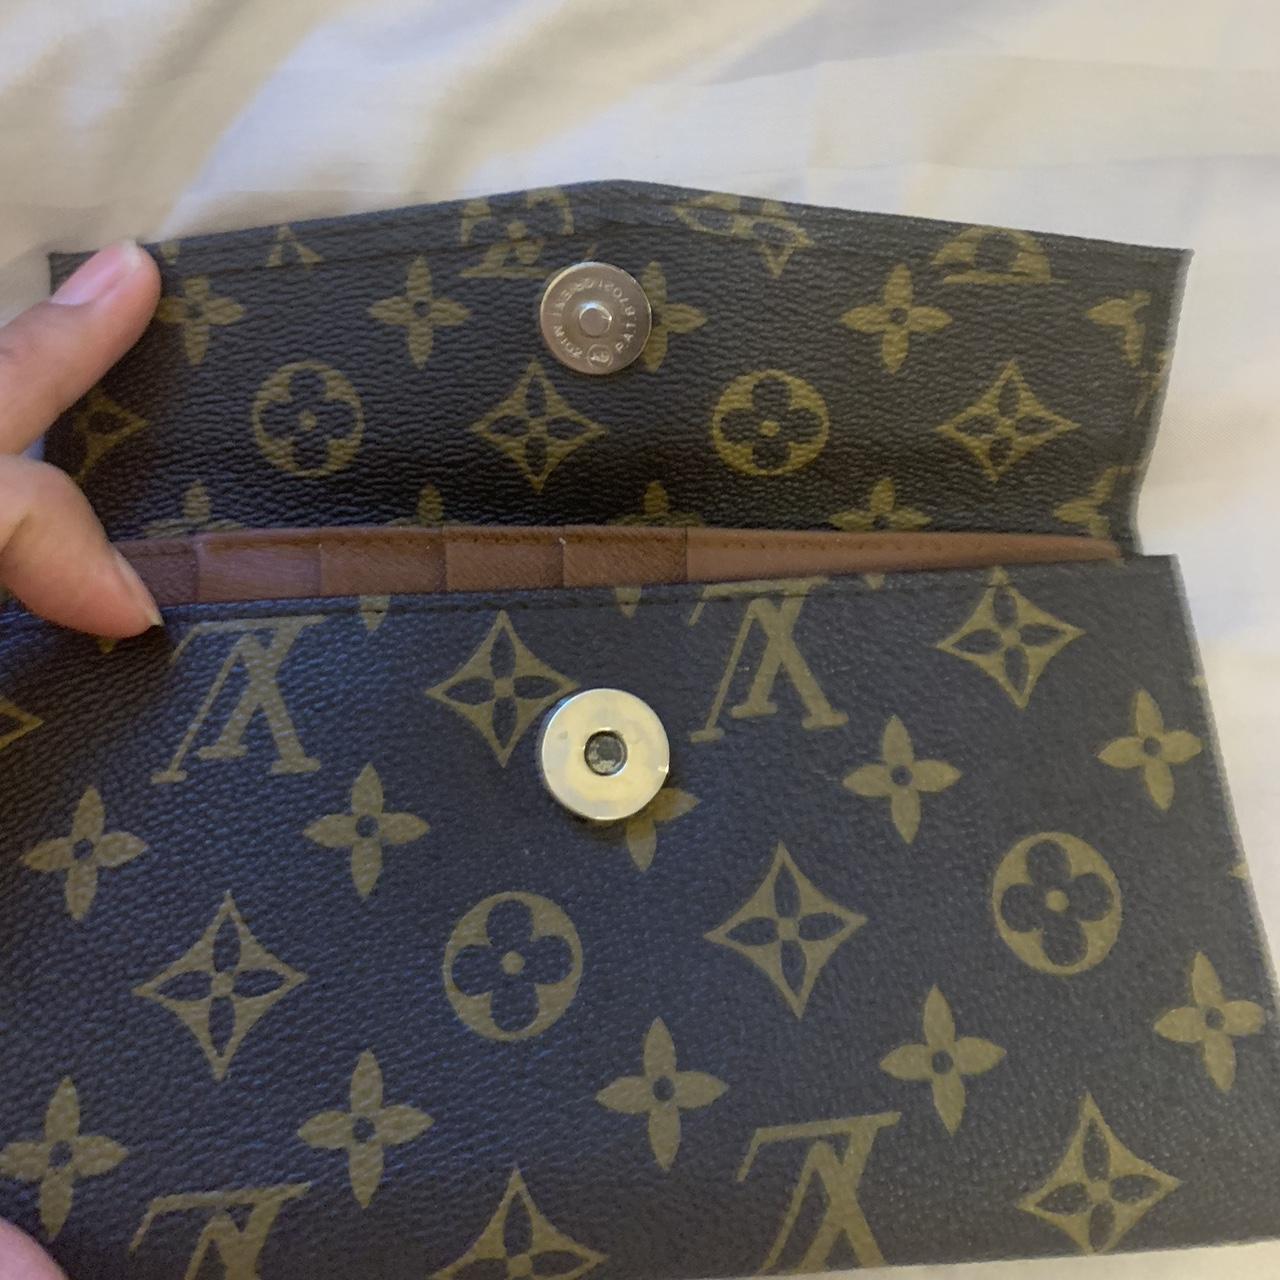 Louis Vuitton wallet check book Bought off depop - Depop